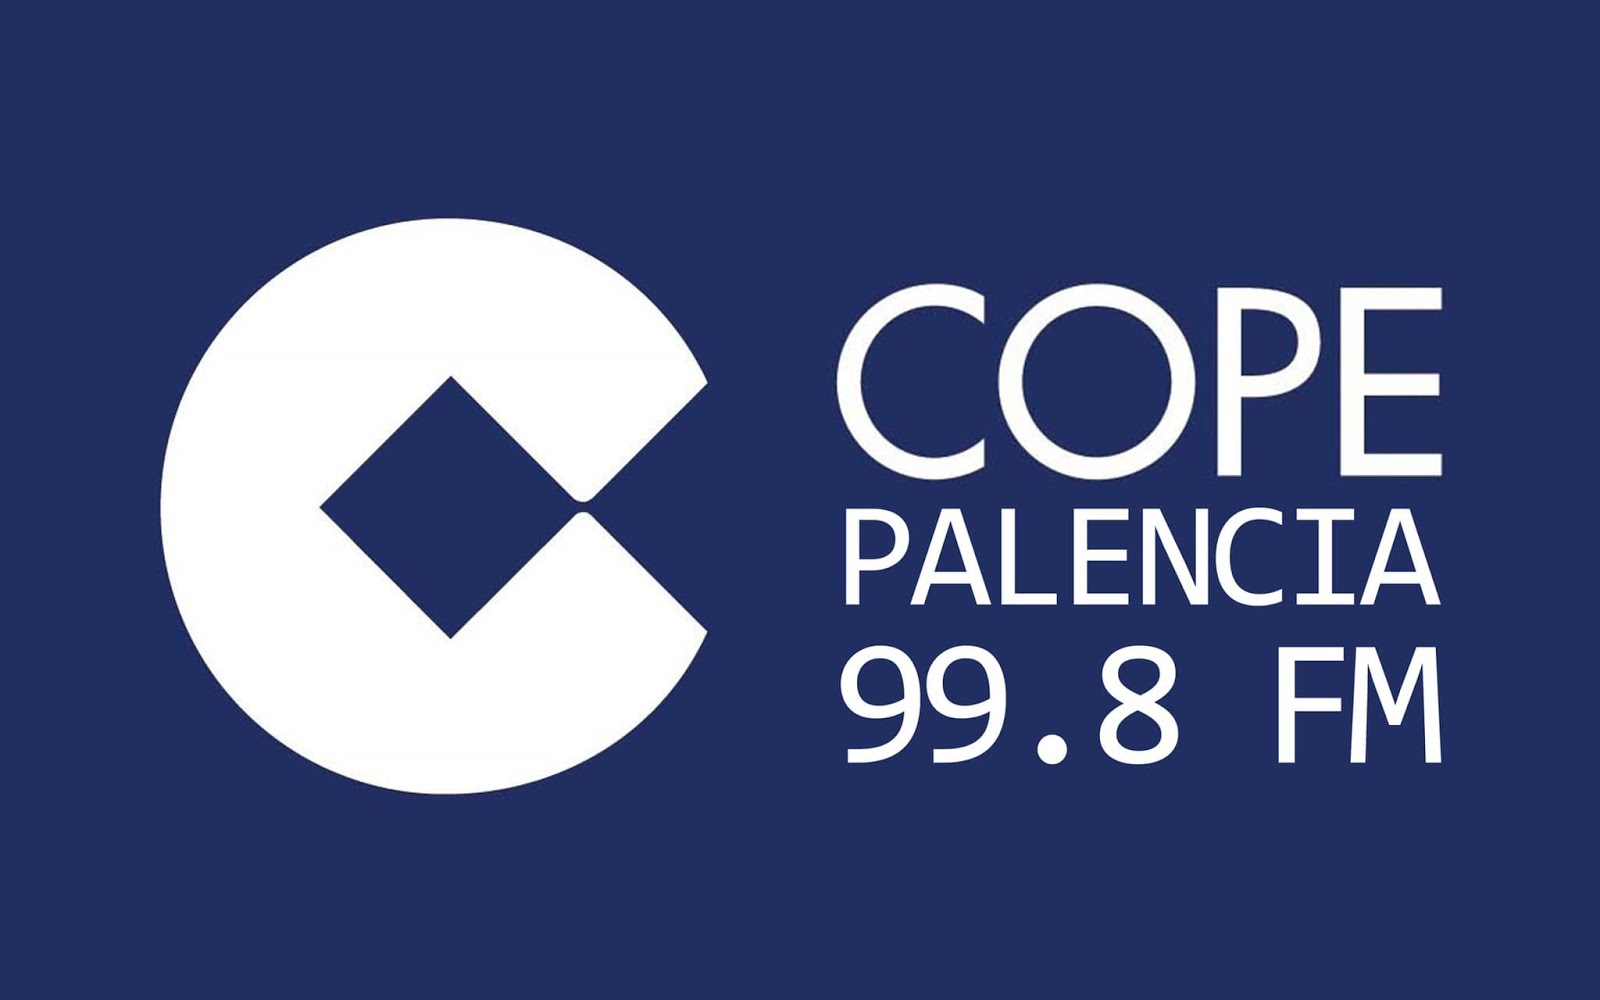 Cope Palencia